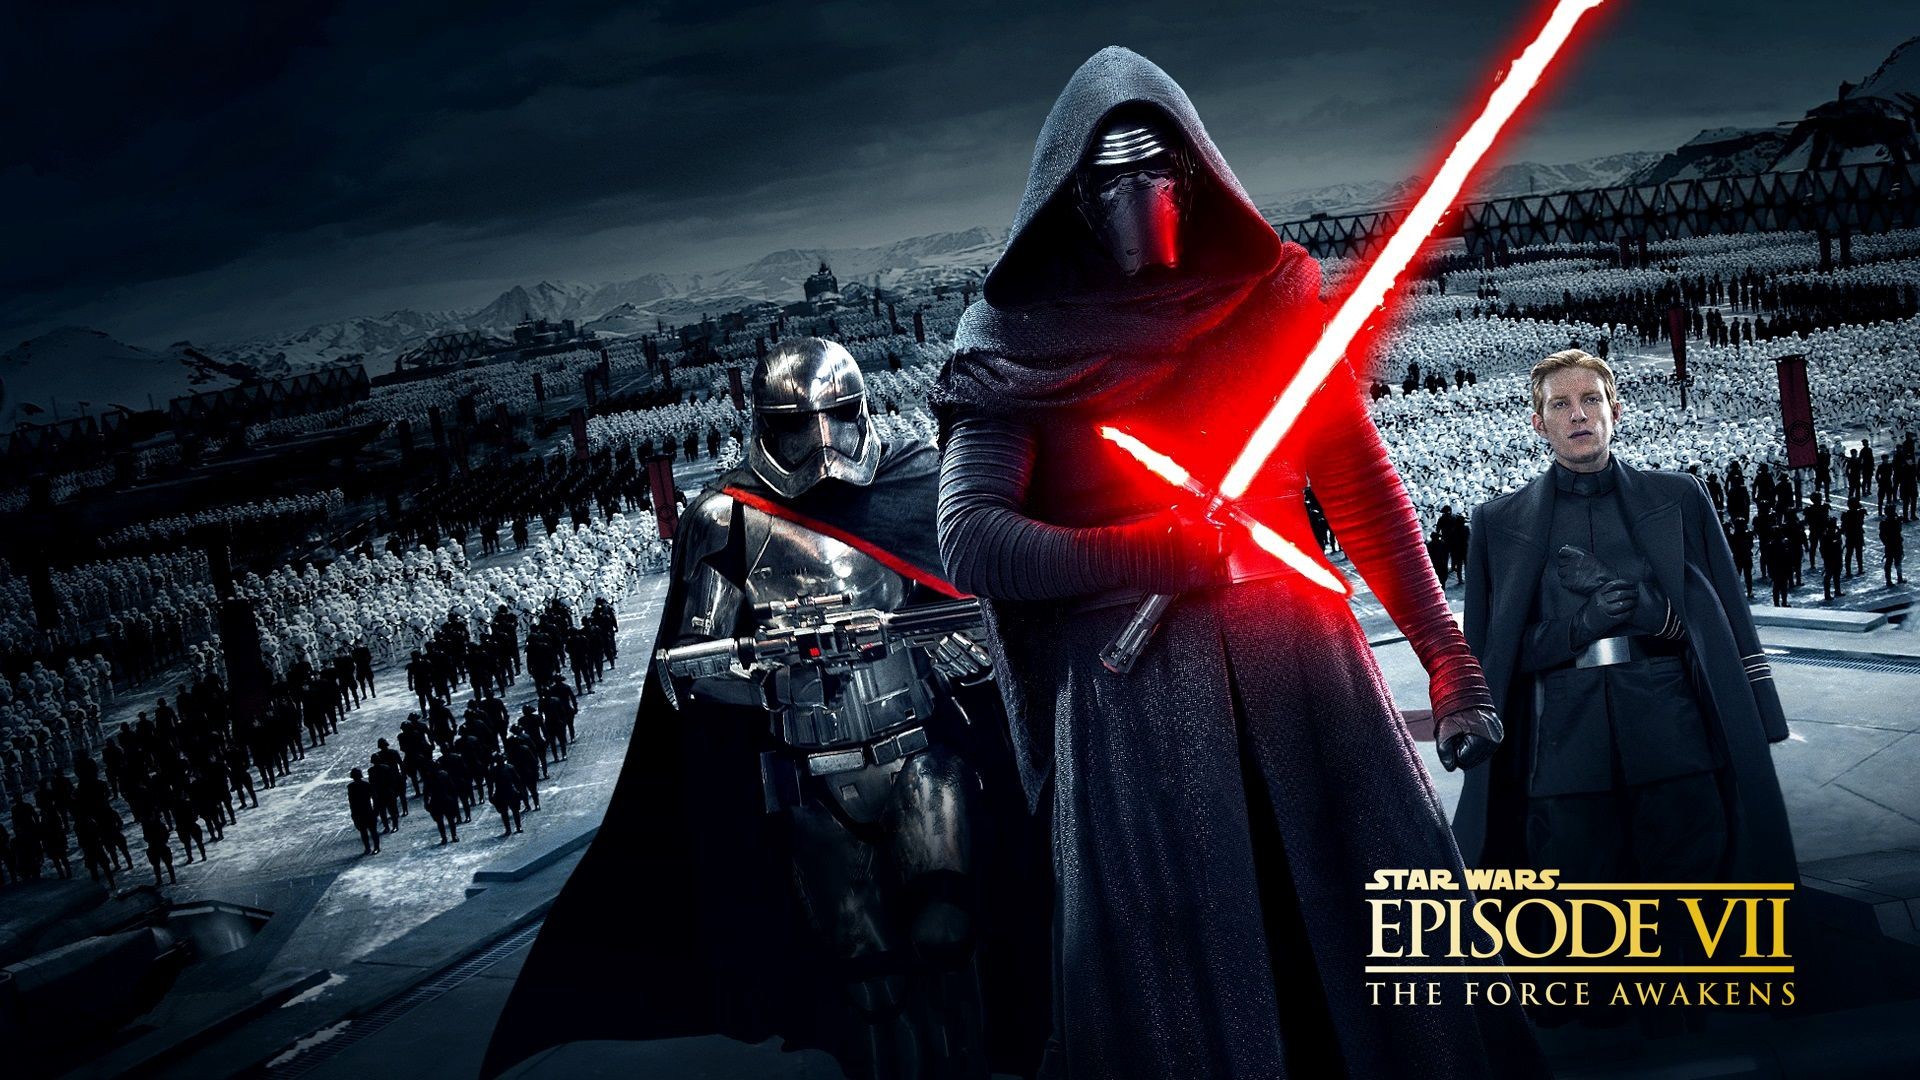 Star Wars Star Wars Episode Vii The Force Awakens Lightsaber